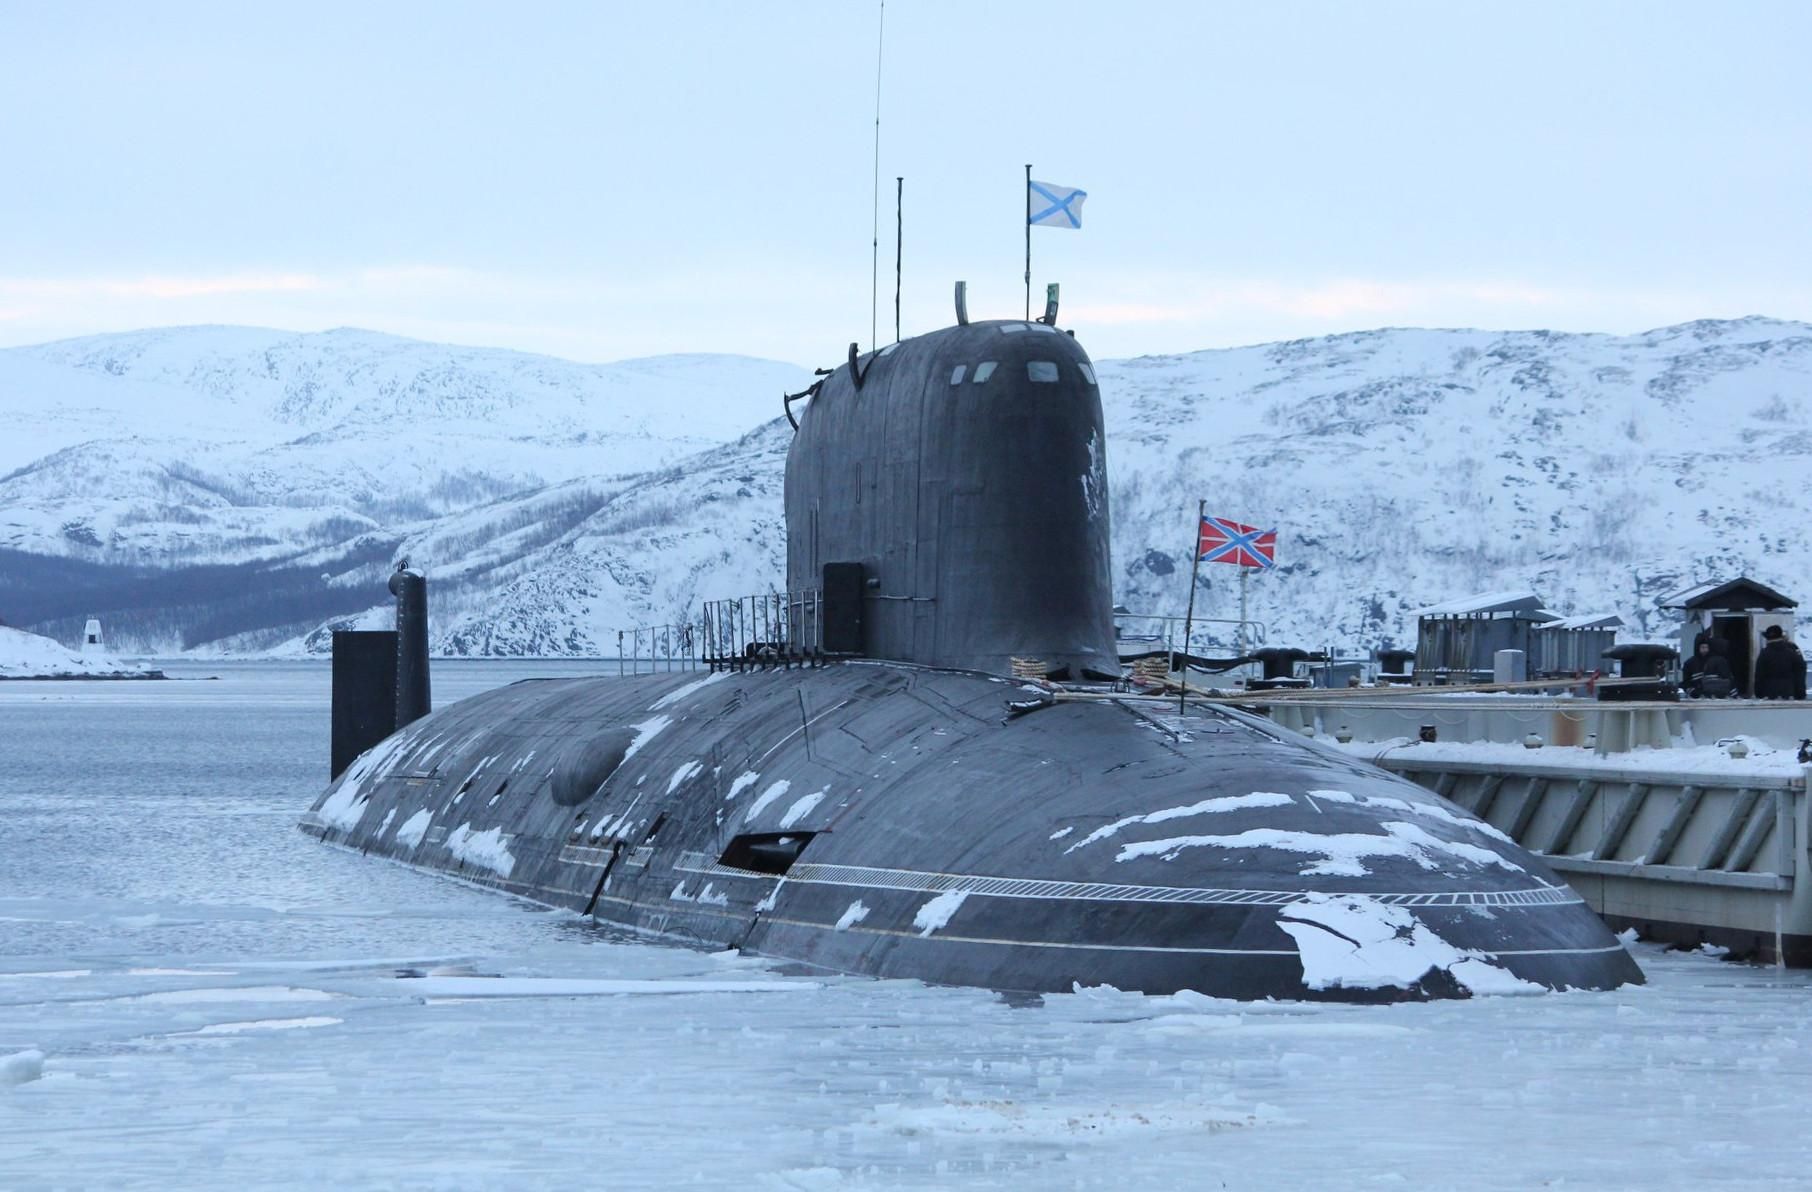 Российские атомные подводные лодки вблизи Норвегии испытывают новое оружие